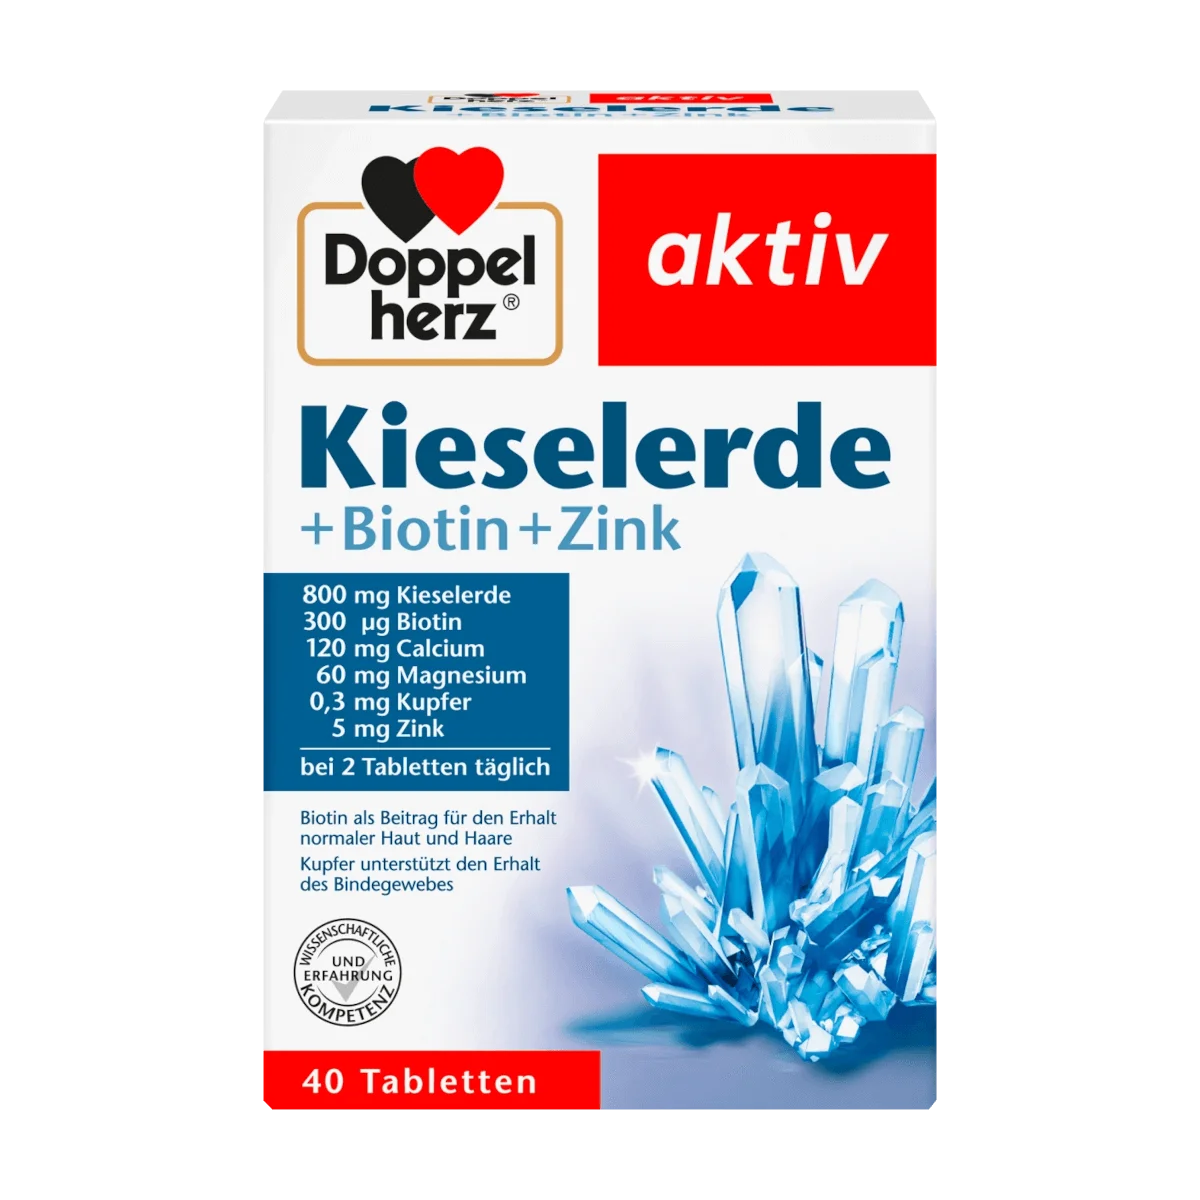 Doppelherz Kieselerde + Biotin + Zink Tabletten, 40 Stk